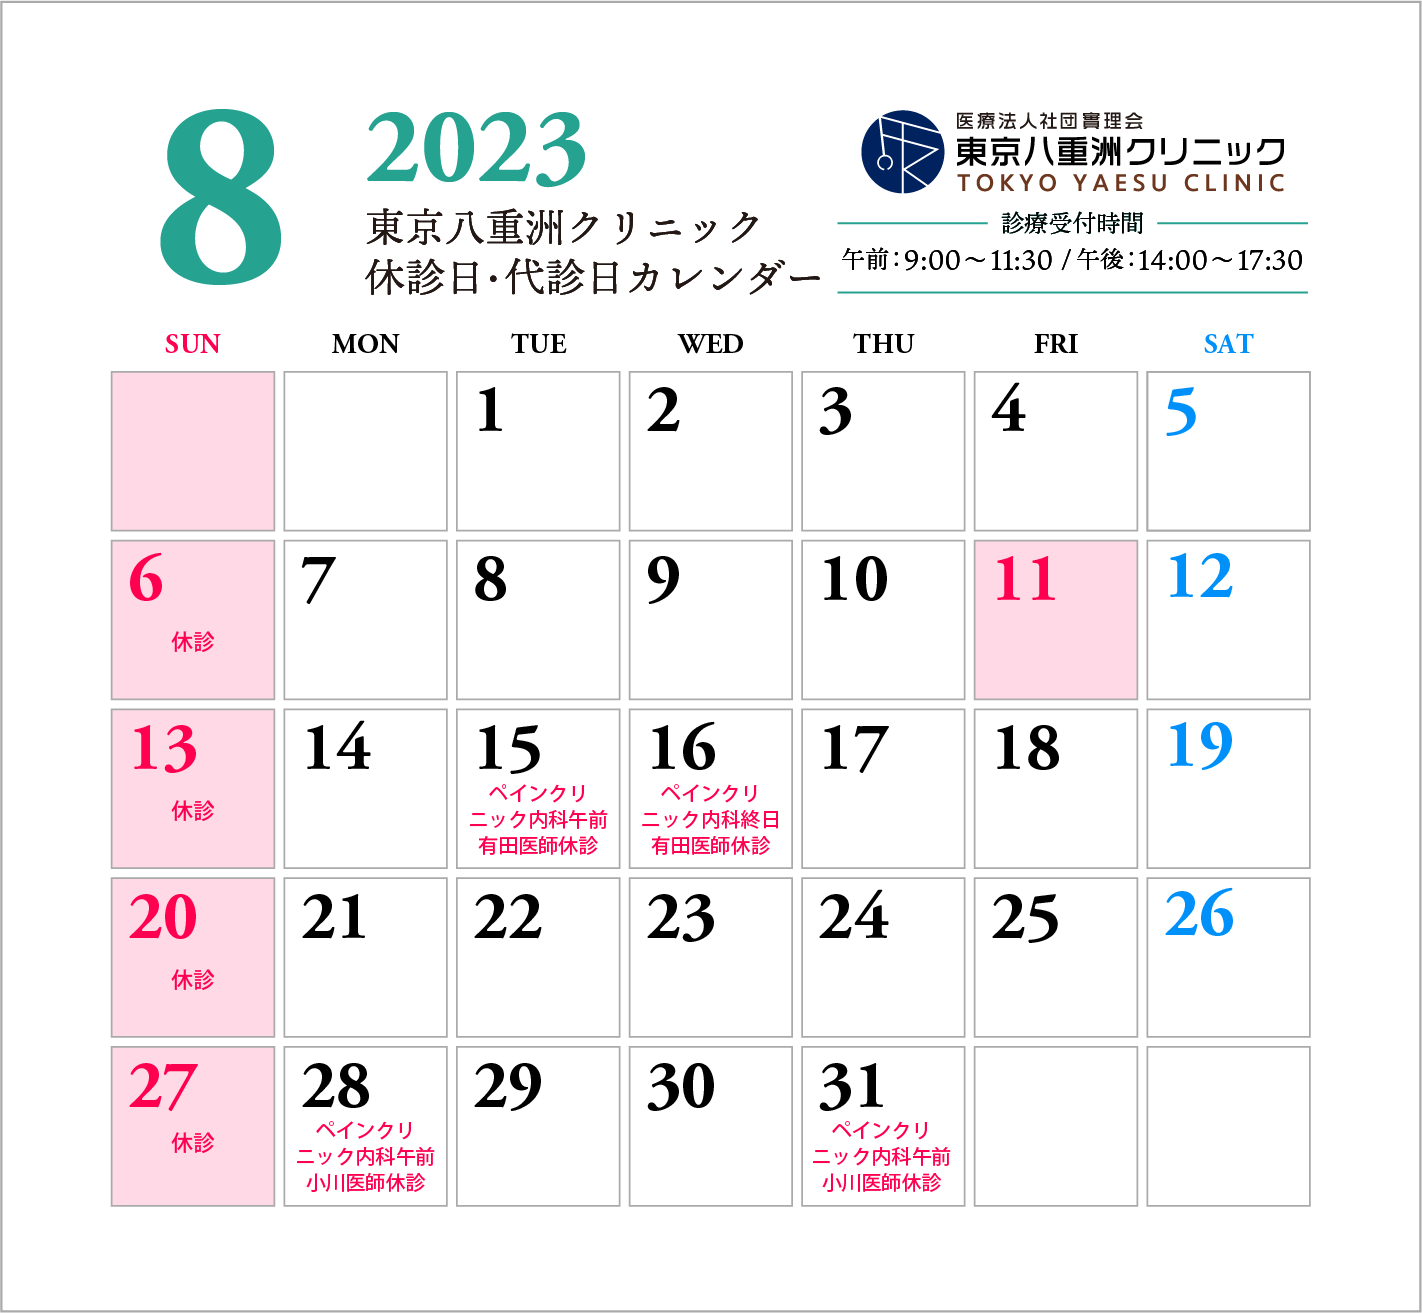 【更新】8月休診日・代診日のお知らせ